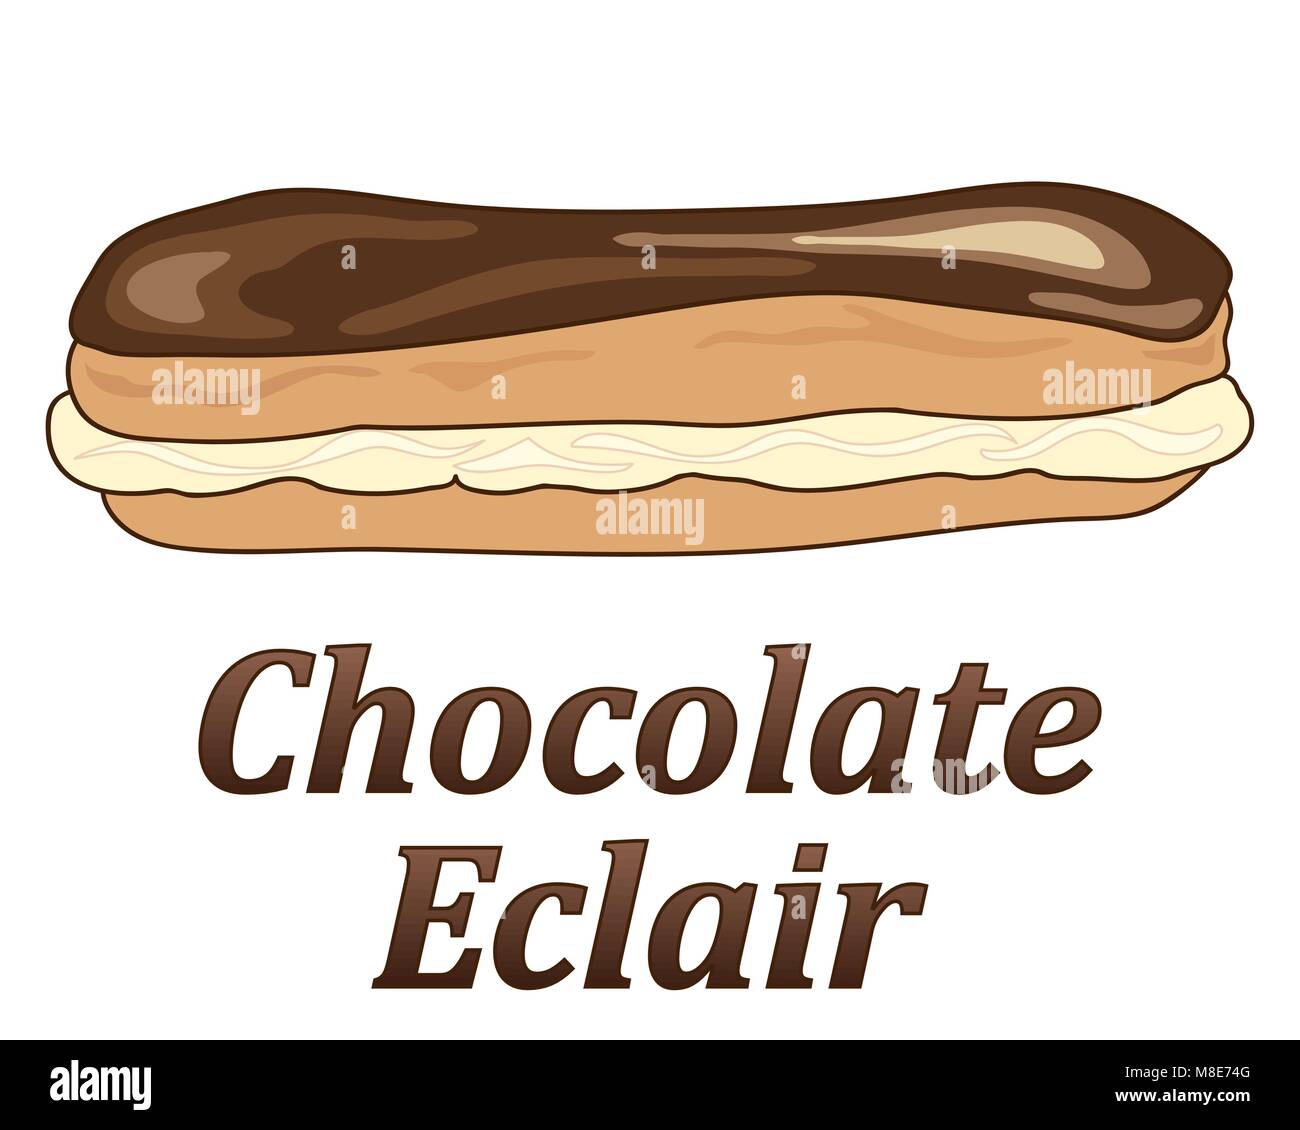 Un vecteur illustration en eps 10 format d'un eclair au chocolat avec crème et pâte à choux en format publicitaire sur un fond blanc Illustration de Vecteur